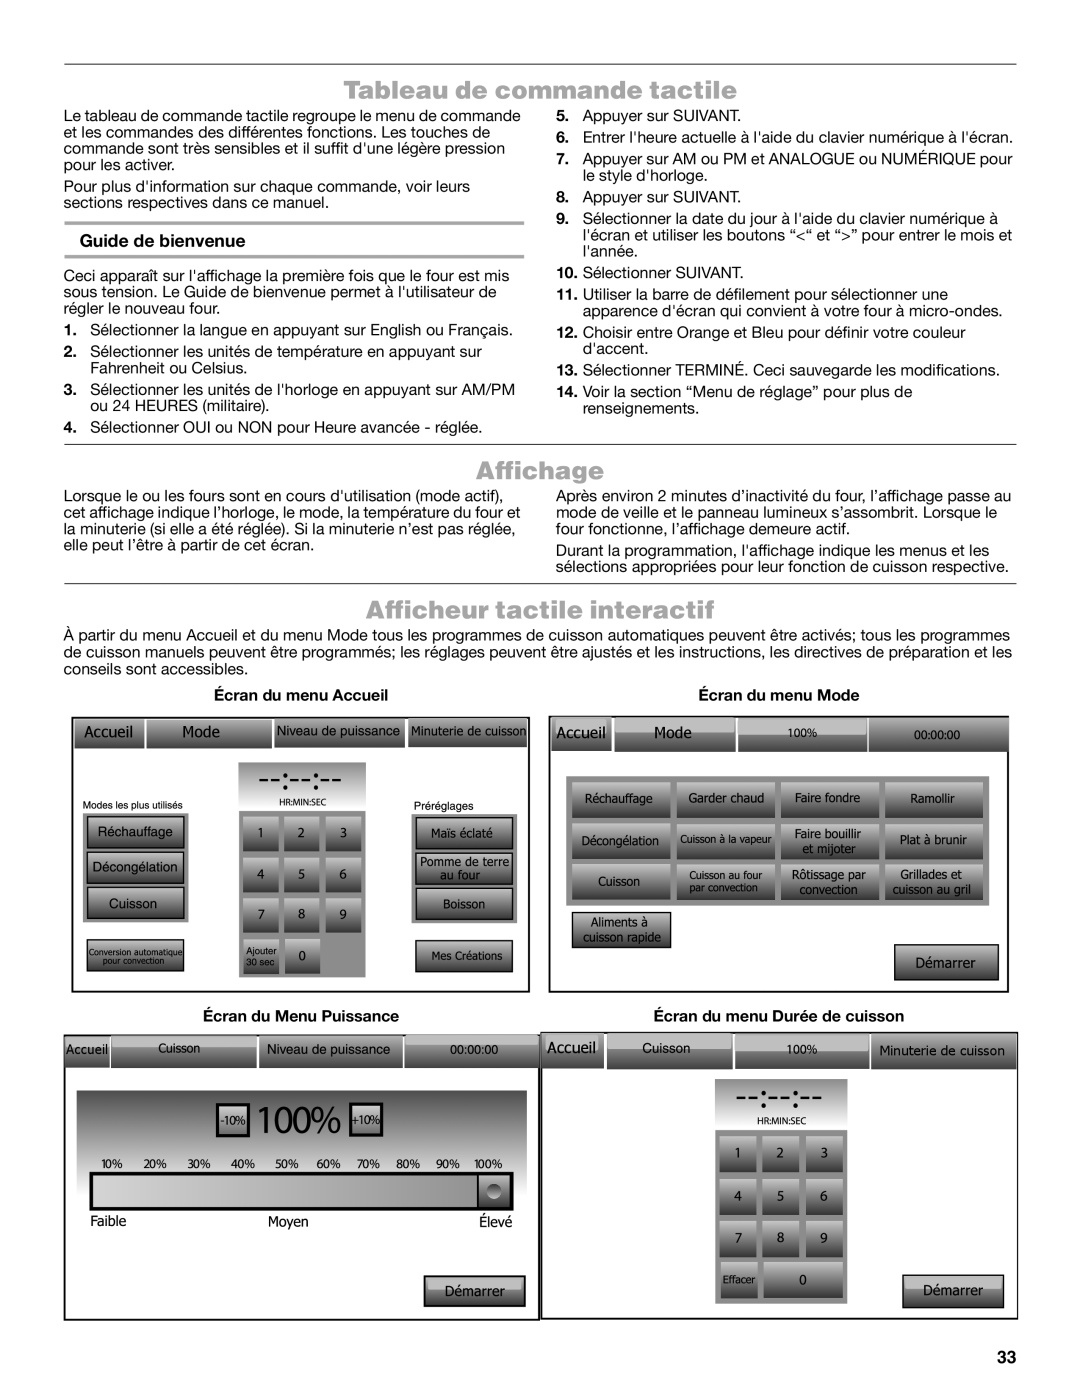 Jenn-Air JMW3430 manual Tableau de commande tactile, Affichage, Afficheur tactile interactif, Guide de bienvenue 